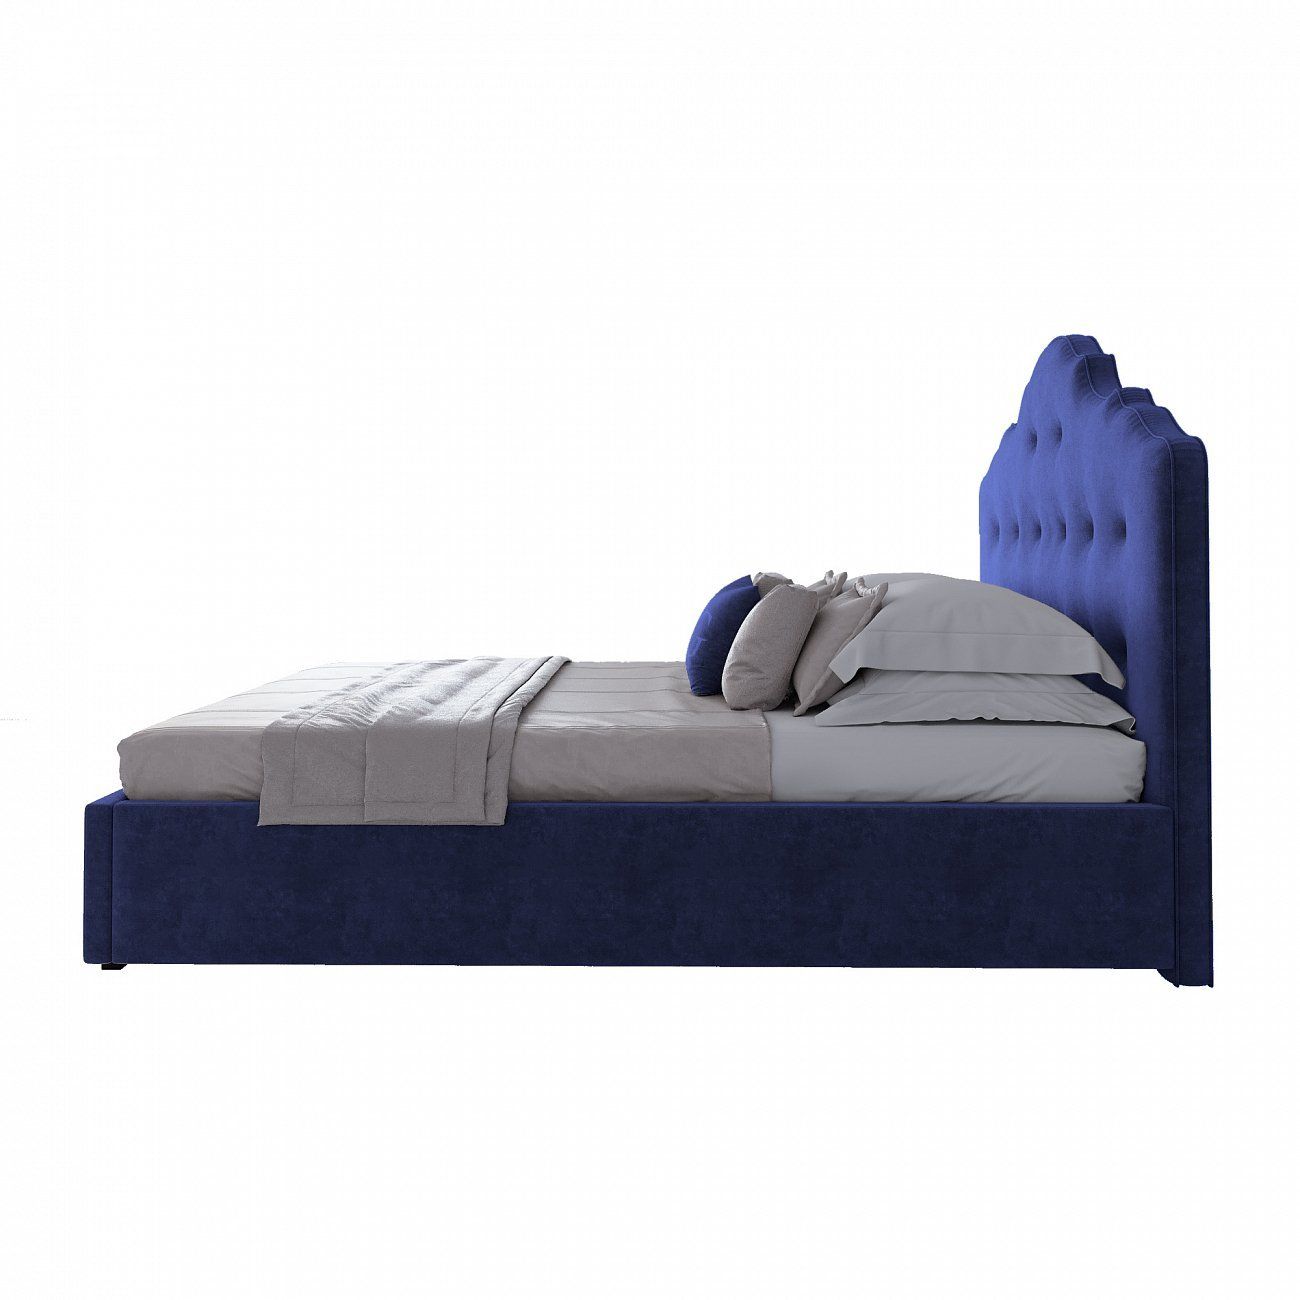 Кровать двуспальная 160х200 см синяя Palace